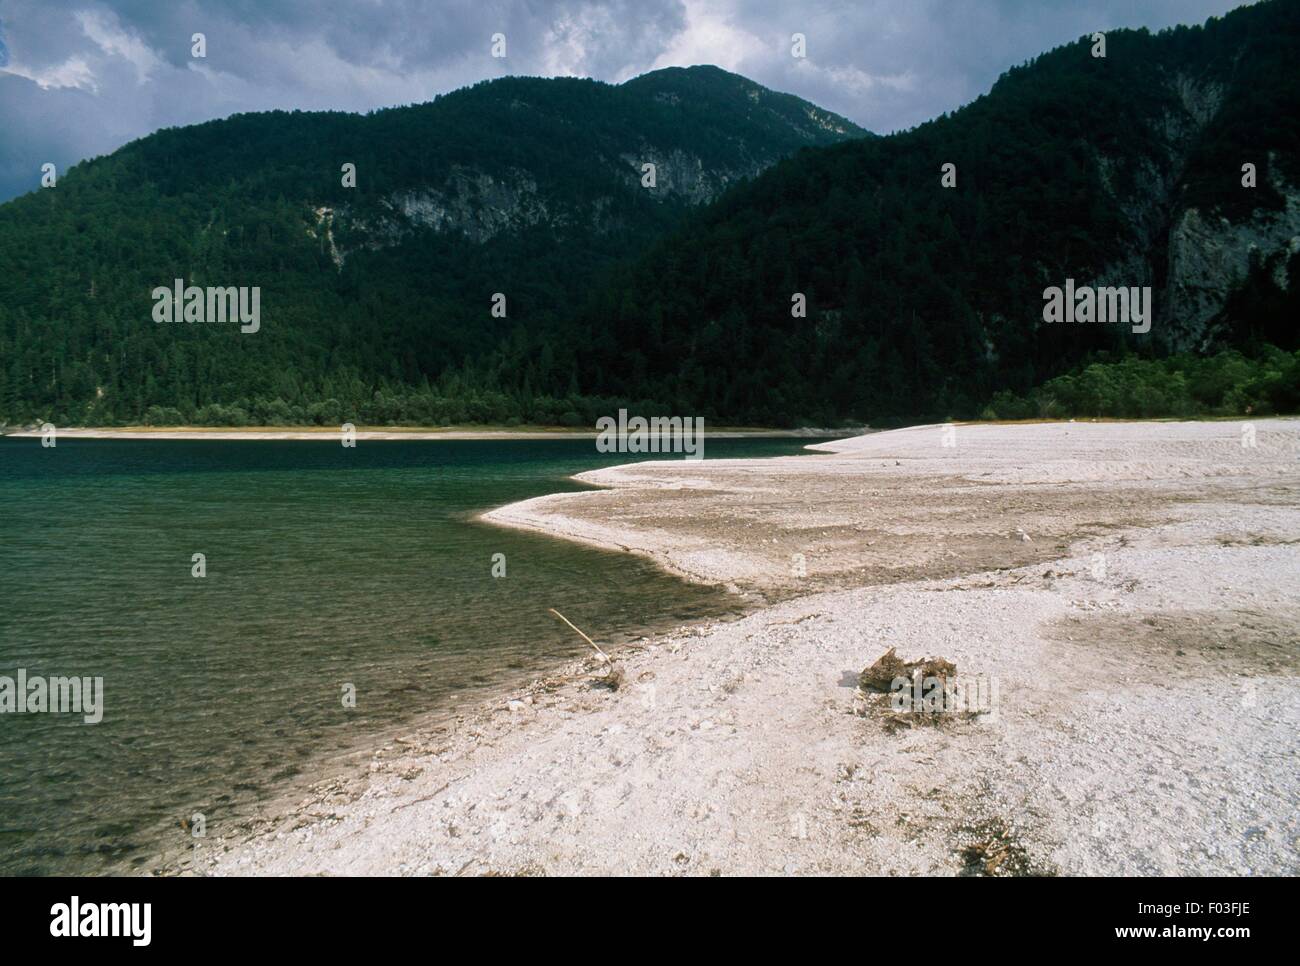 Predil (or Raibl) Lake in Rio del Lago valley, Forest of Tarvisio, Friuli-Venezia Giulia, Italy. Stock Photo